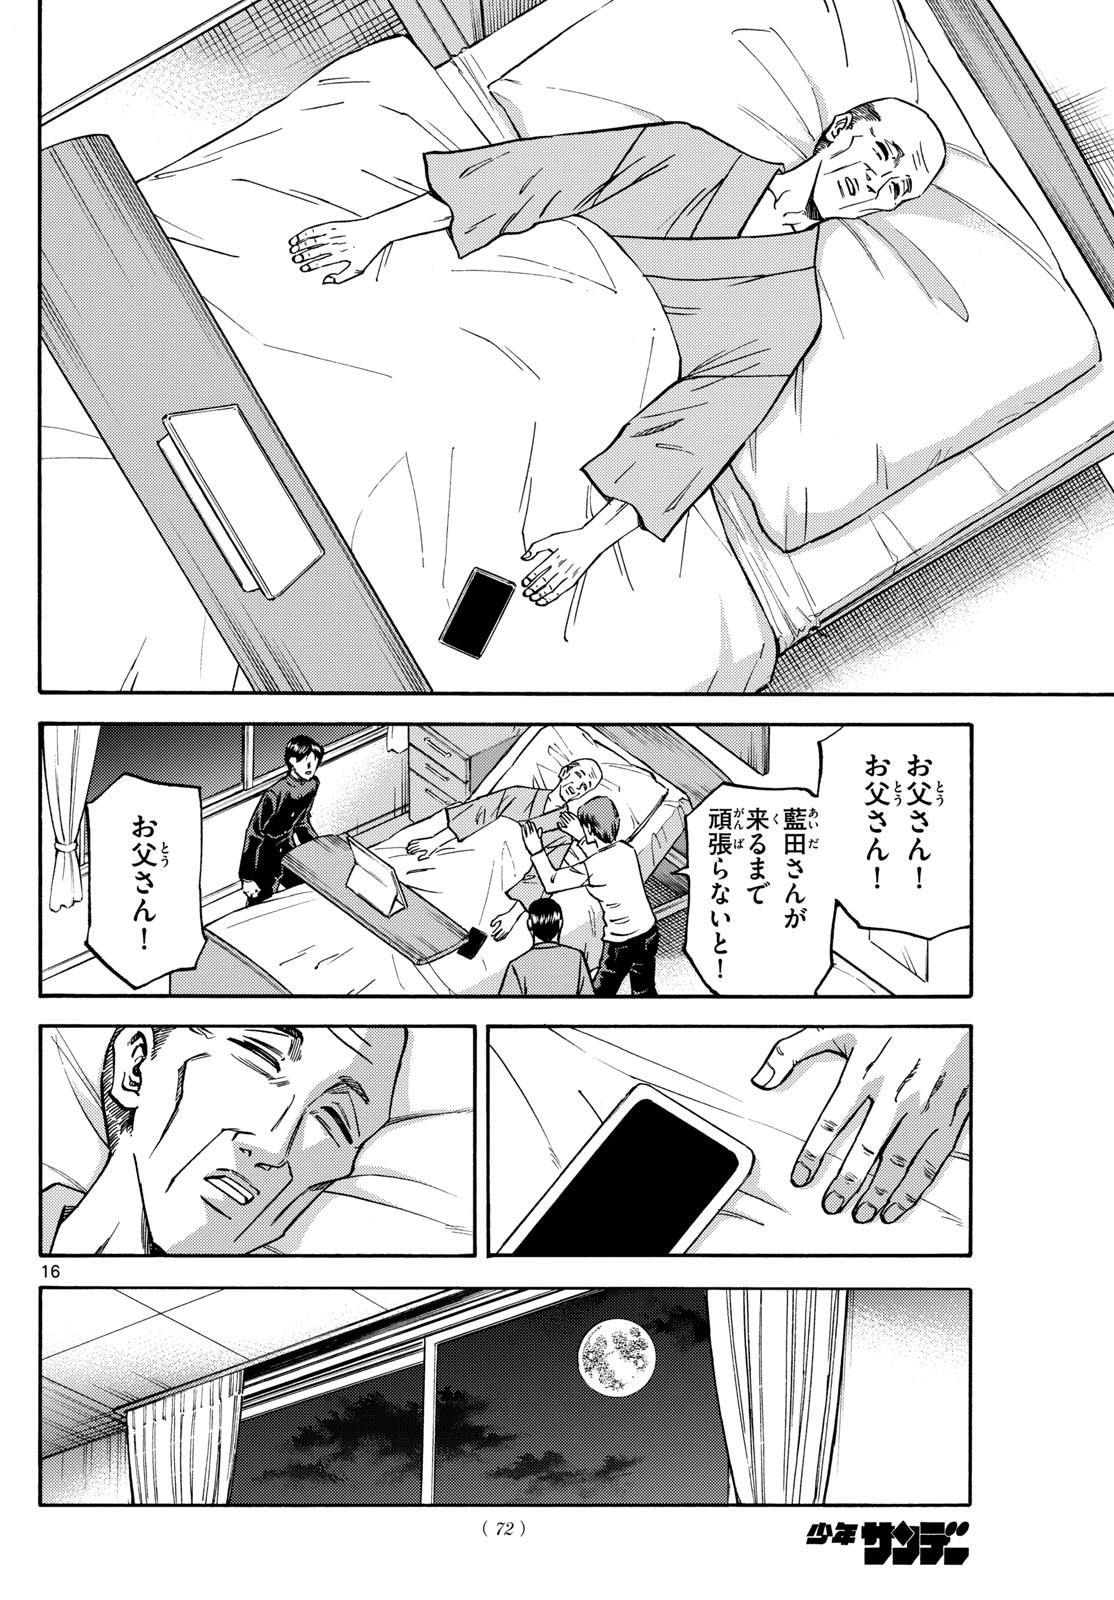 Ryu-to-Ichigo - Chapter 180 - Page 16